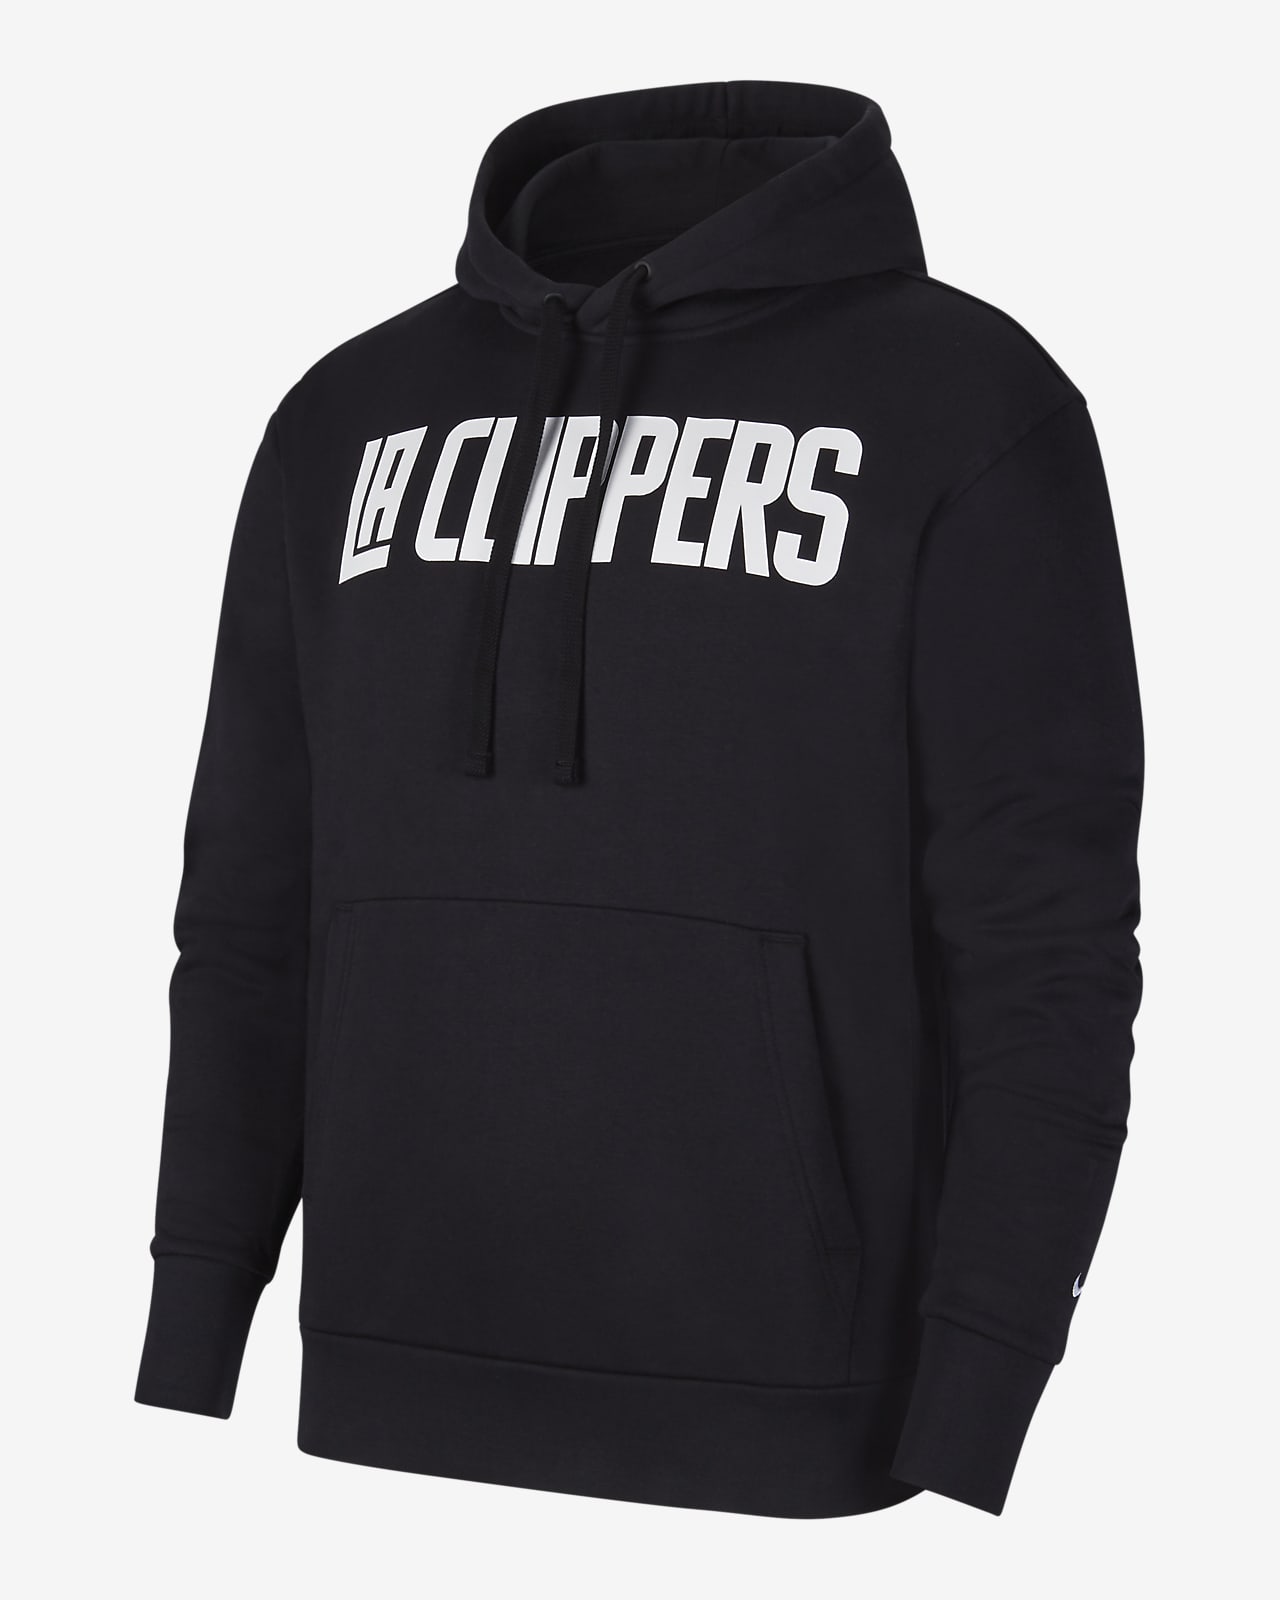 clippers hoodie nike